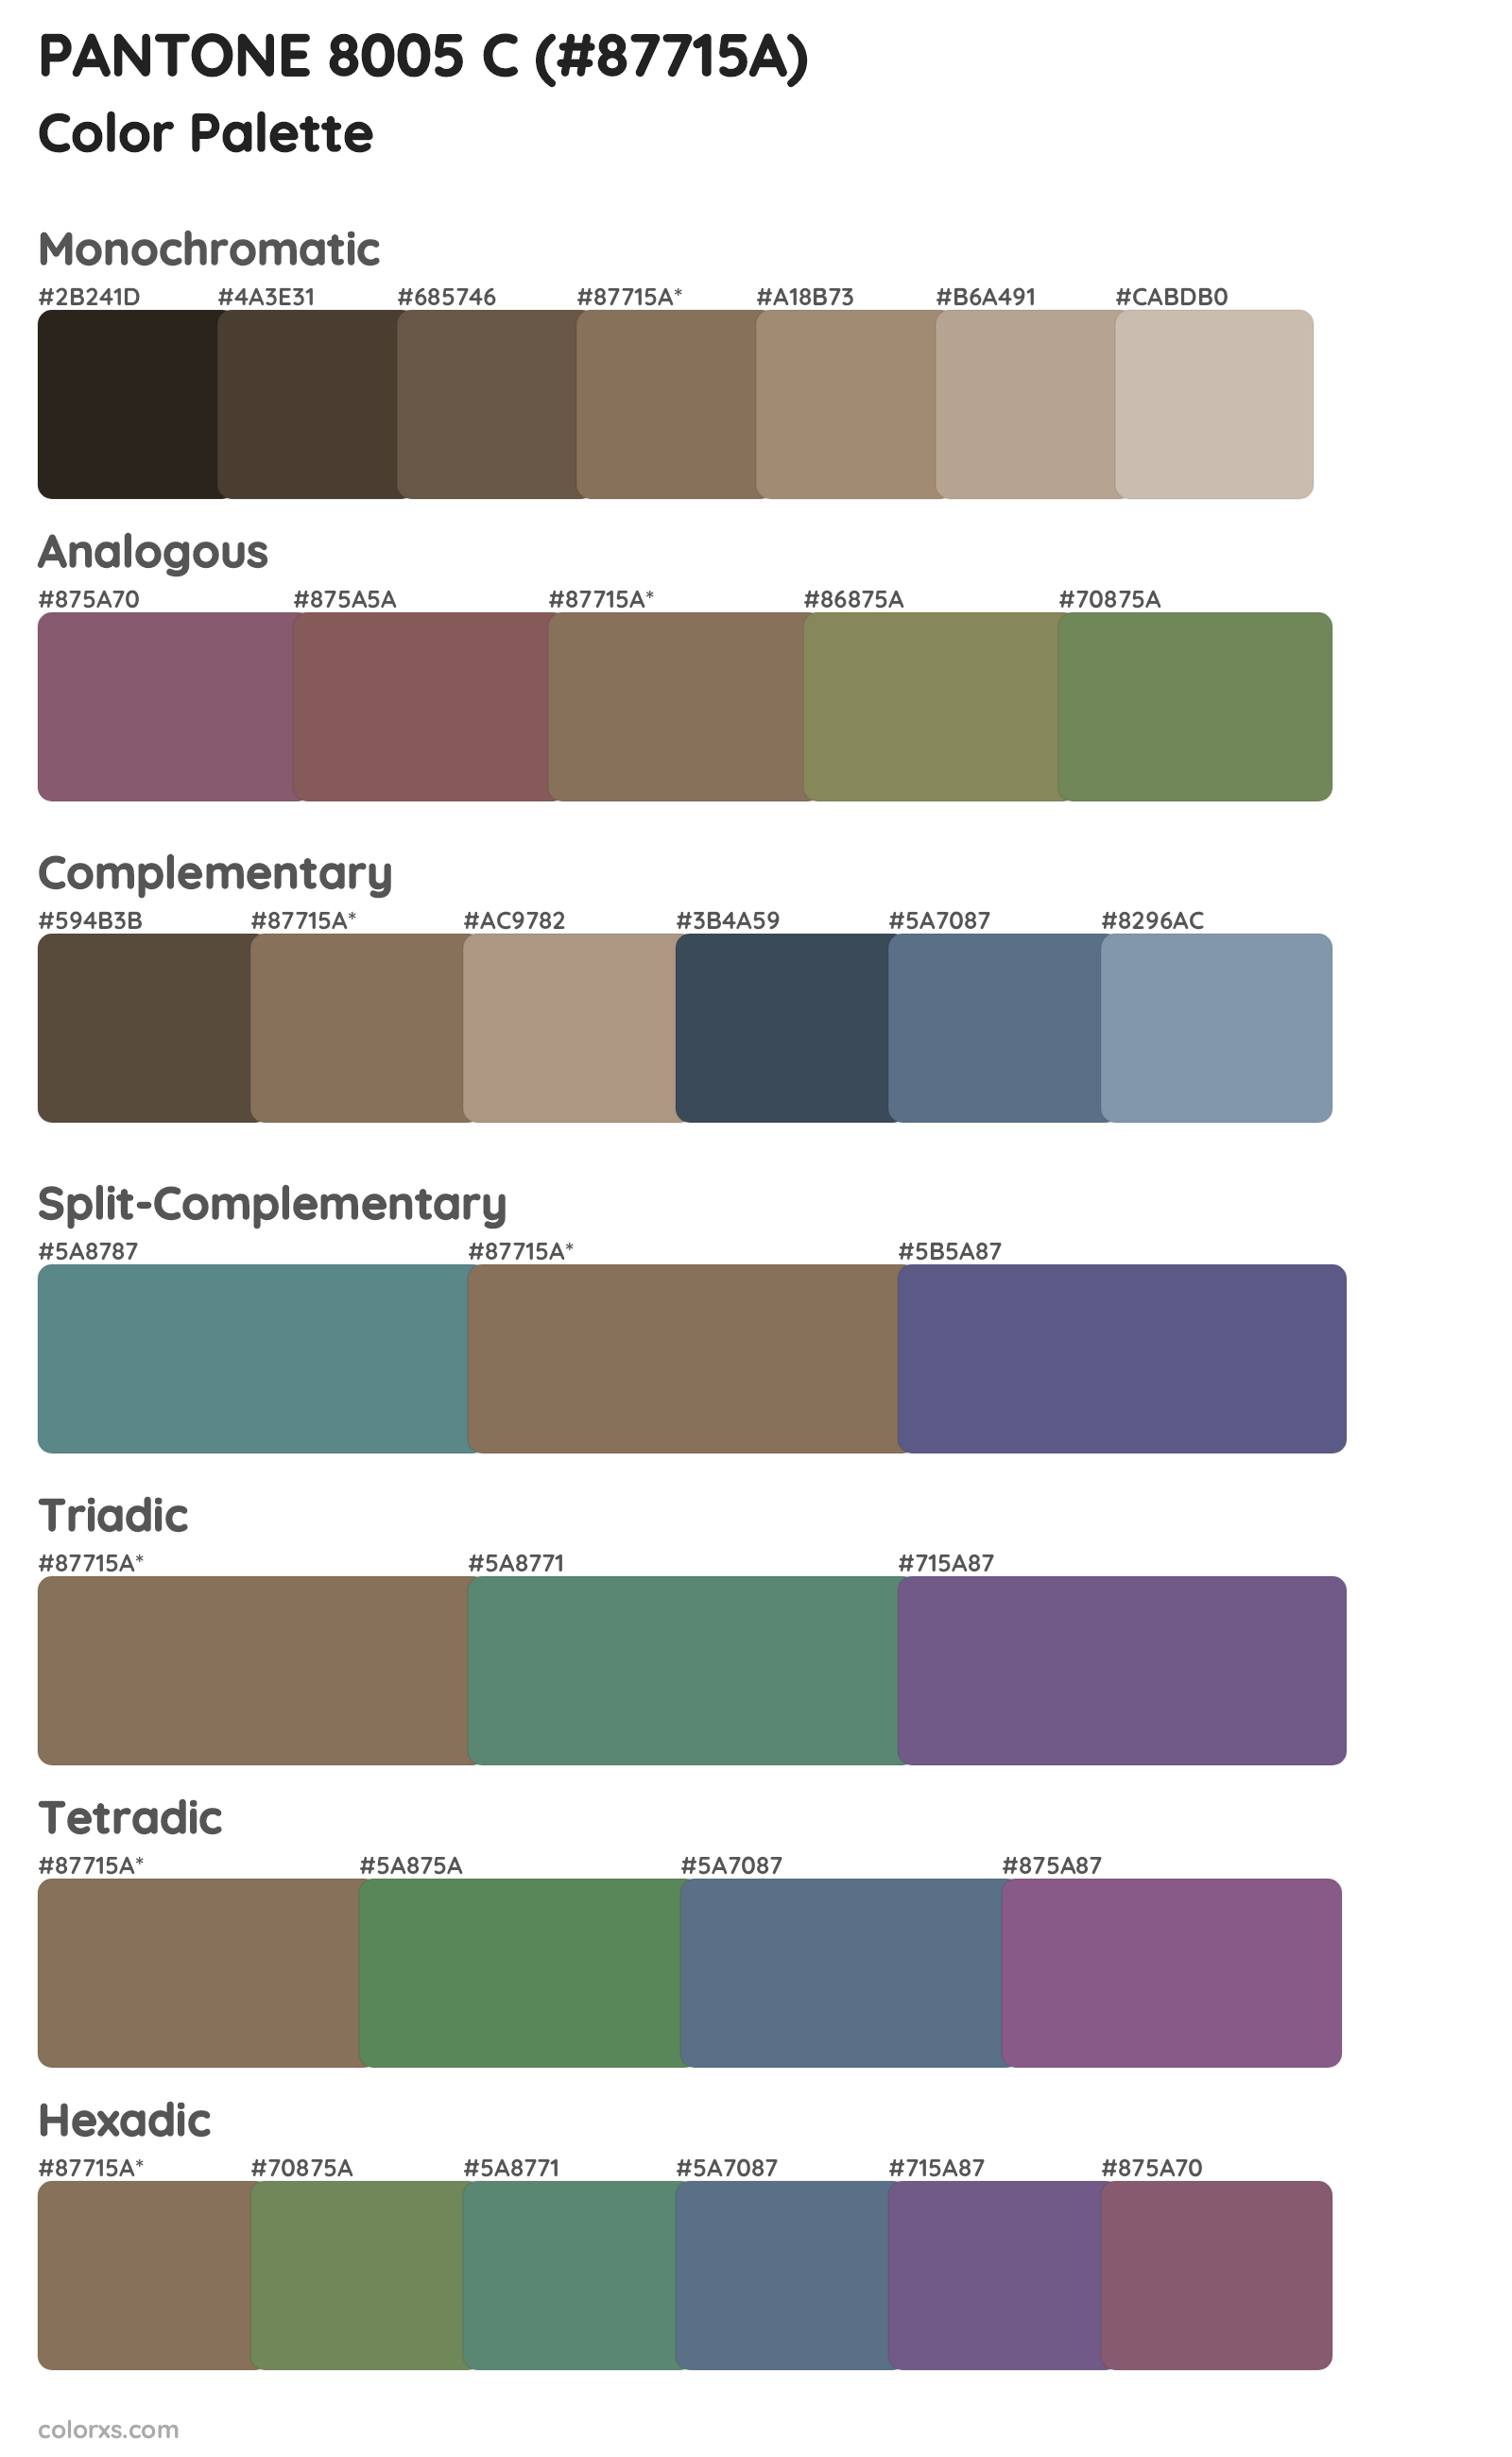 PANTONE 8005 C Color Scheme Palettes